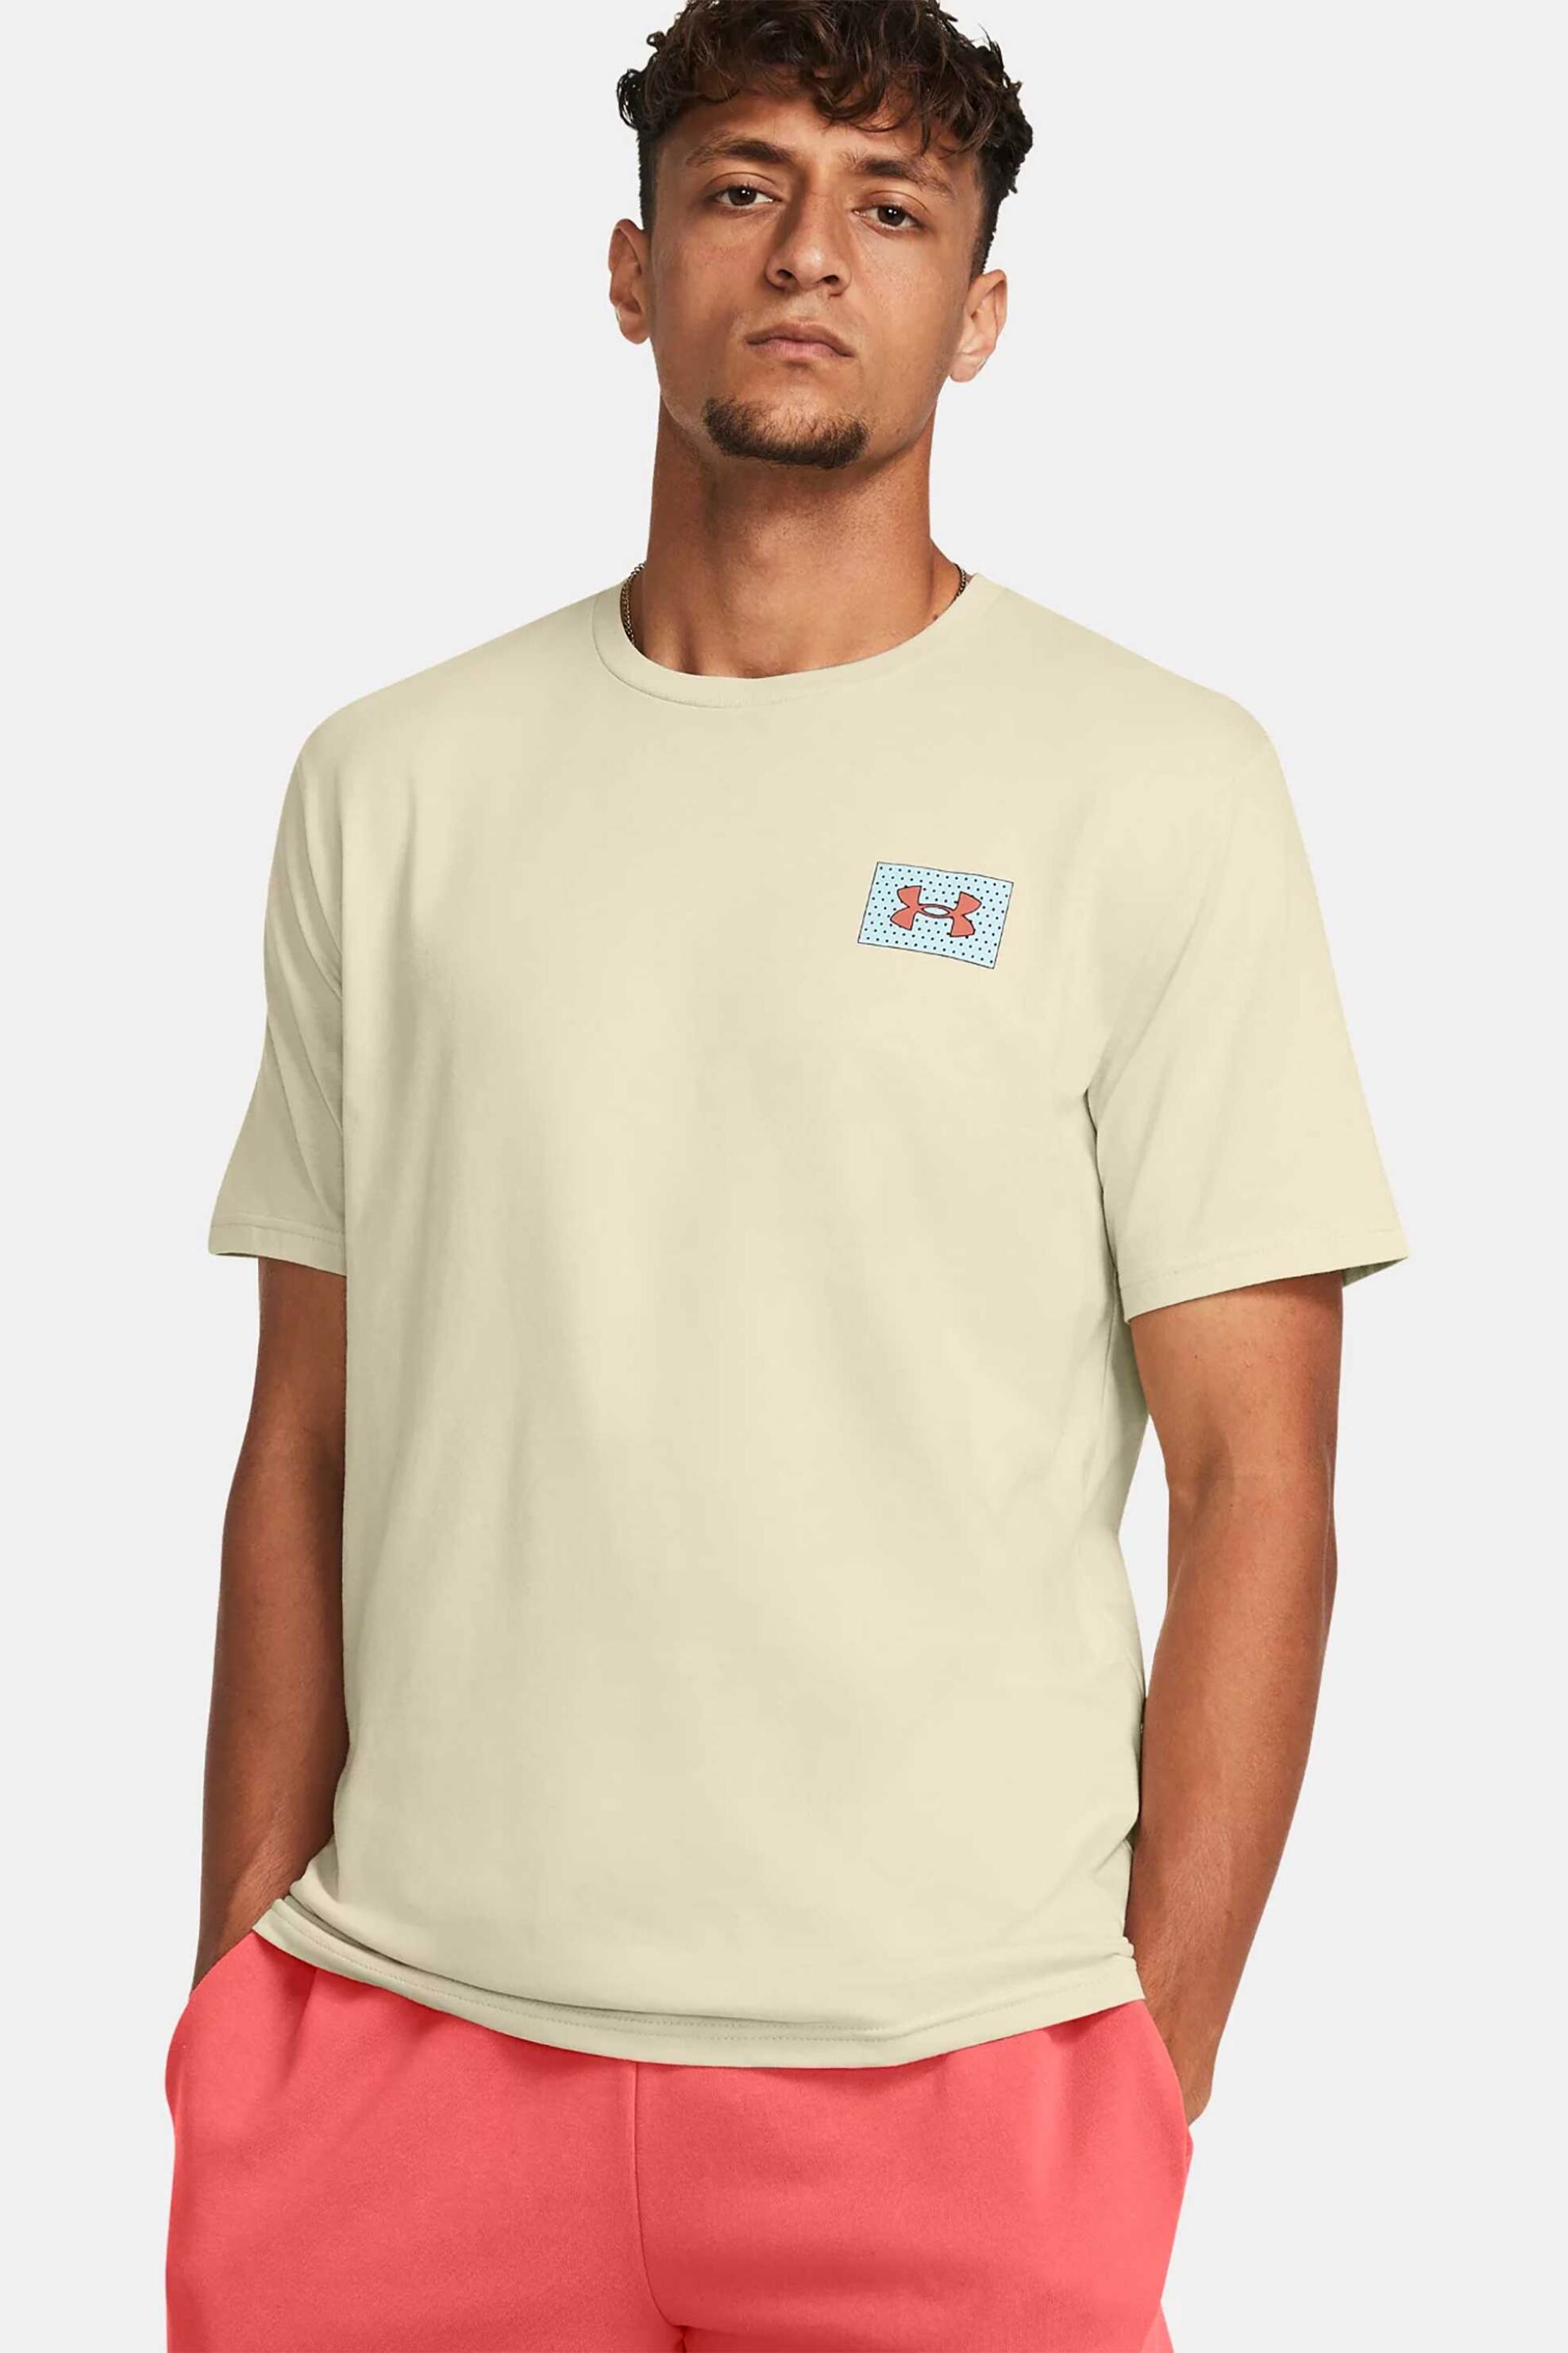 Ανδρική Μόδα > Ανδρικά Αθλητικά > Ανδρικά Αθλητικά Ρούχα > Αθλητικές Μπλούζες > Ανδρικά Αθλητικά T-Shirts Under Armour ανδρικό T-shirt με graphic logo print στο πίσω μέρος Loose Fit - 1382828 Εκρού